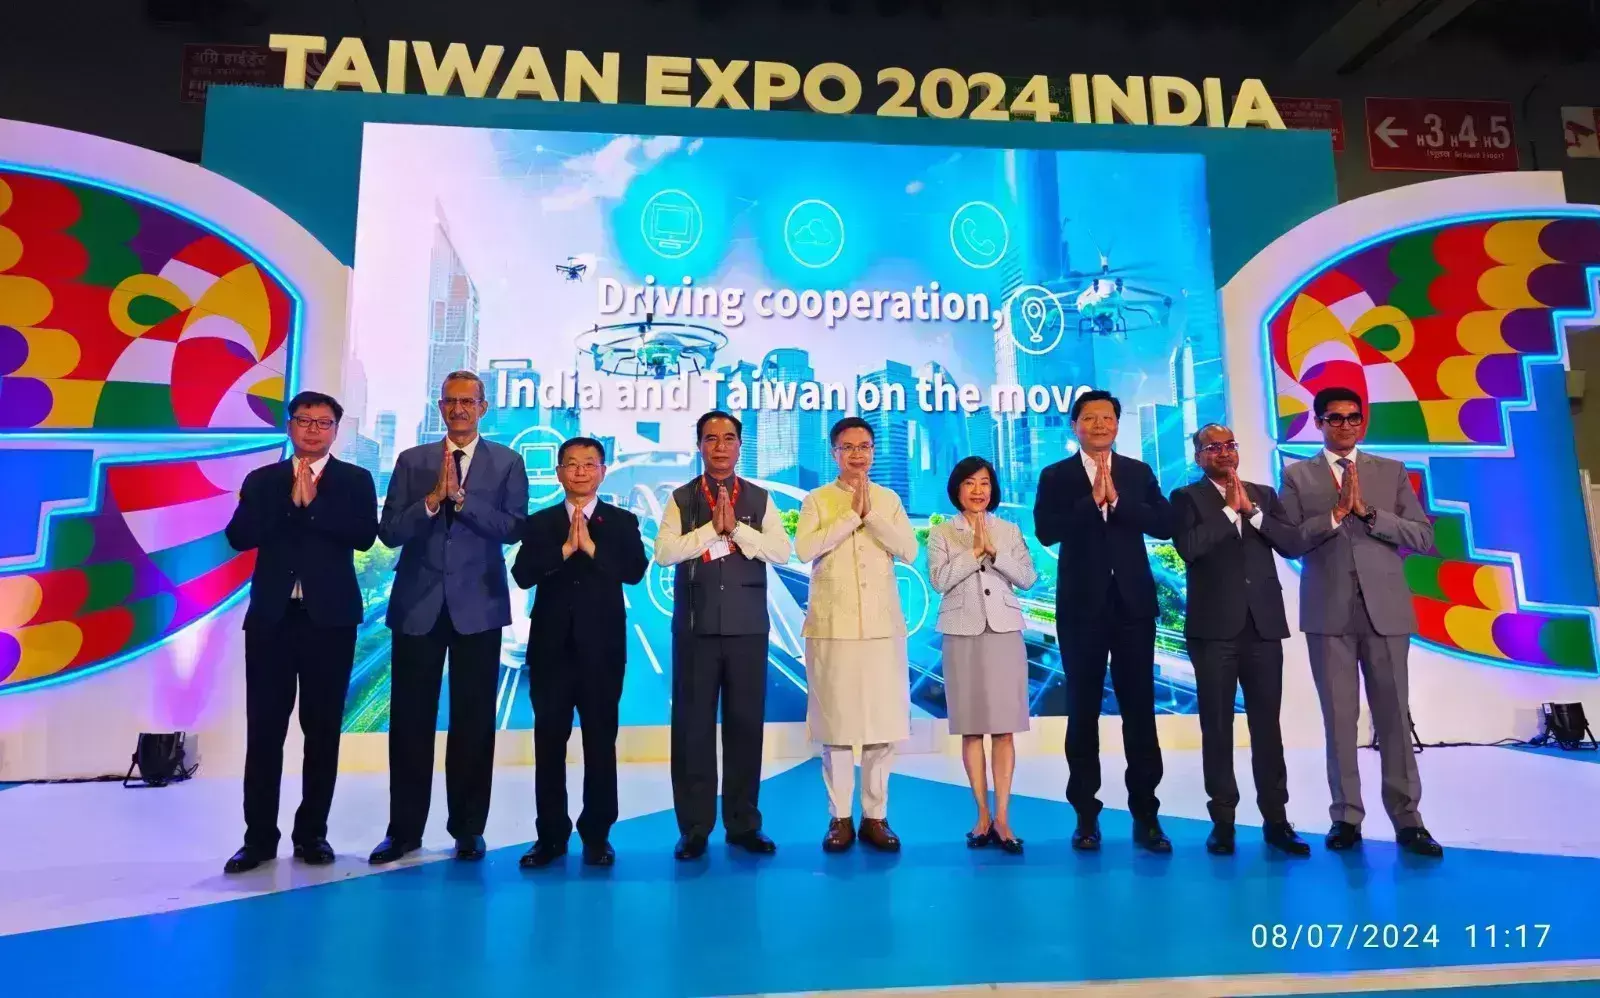 मुख्यमंत्री भारत के अतिथि के रूप में ताइवान एक्सपो 2024 में शामिल हुए